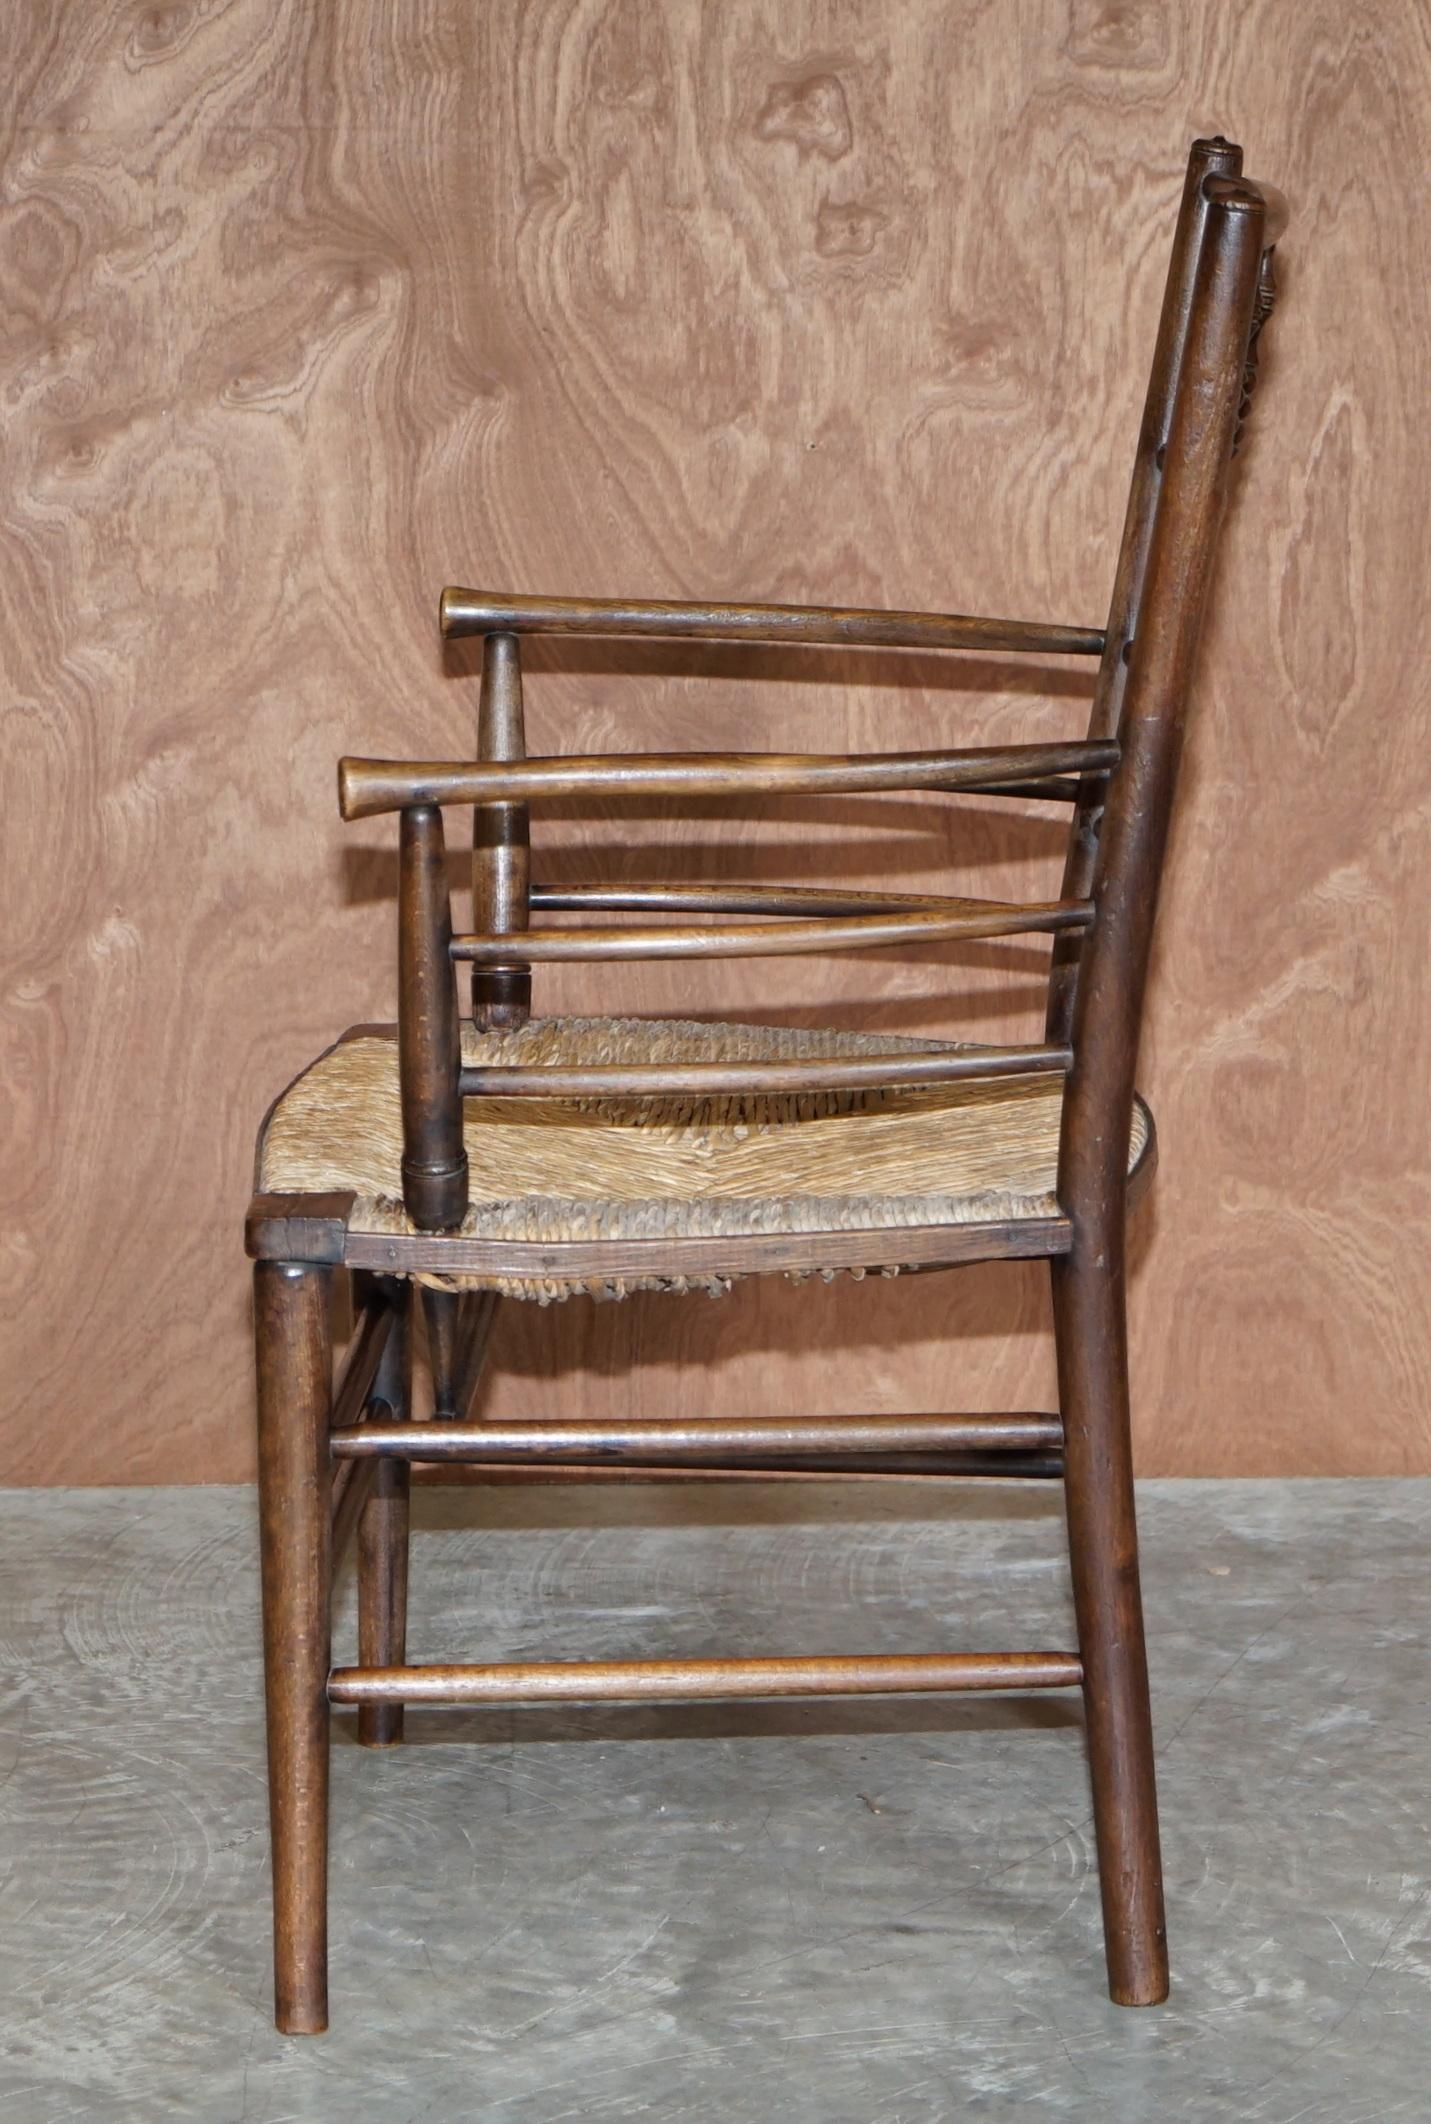 Antique Original William Morris Sussex Rush Seat Armchair Seen in the V&A Museum 7